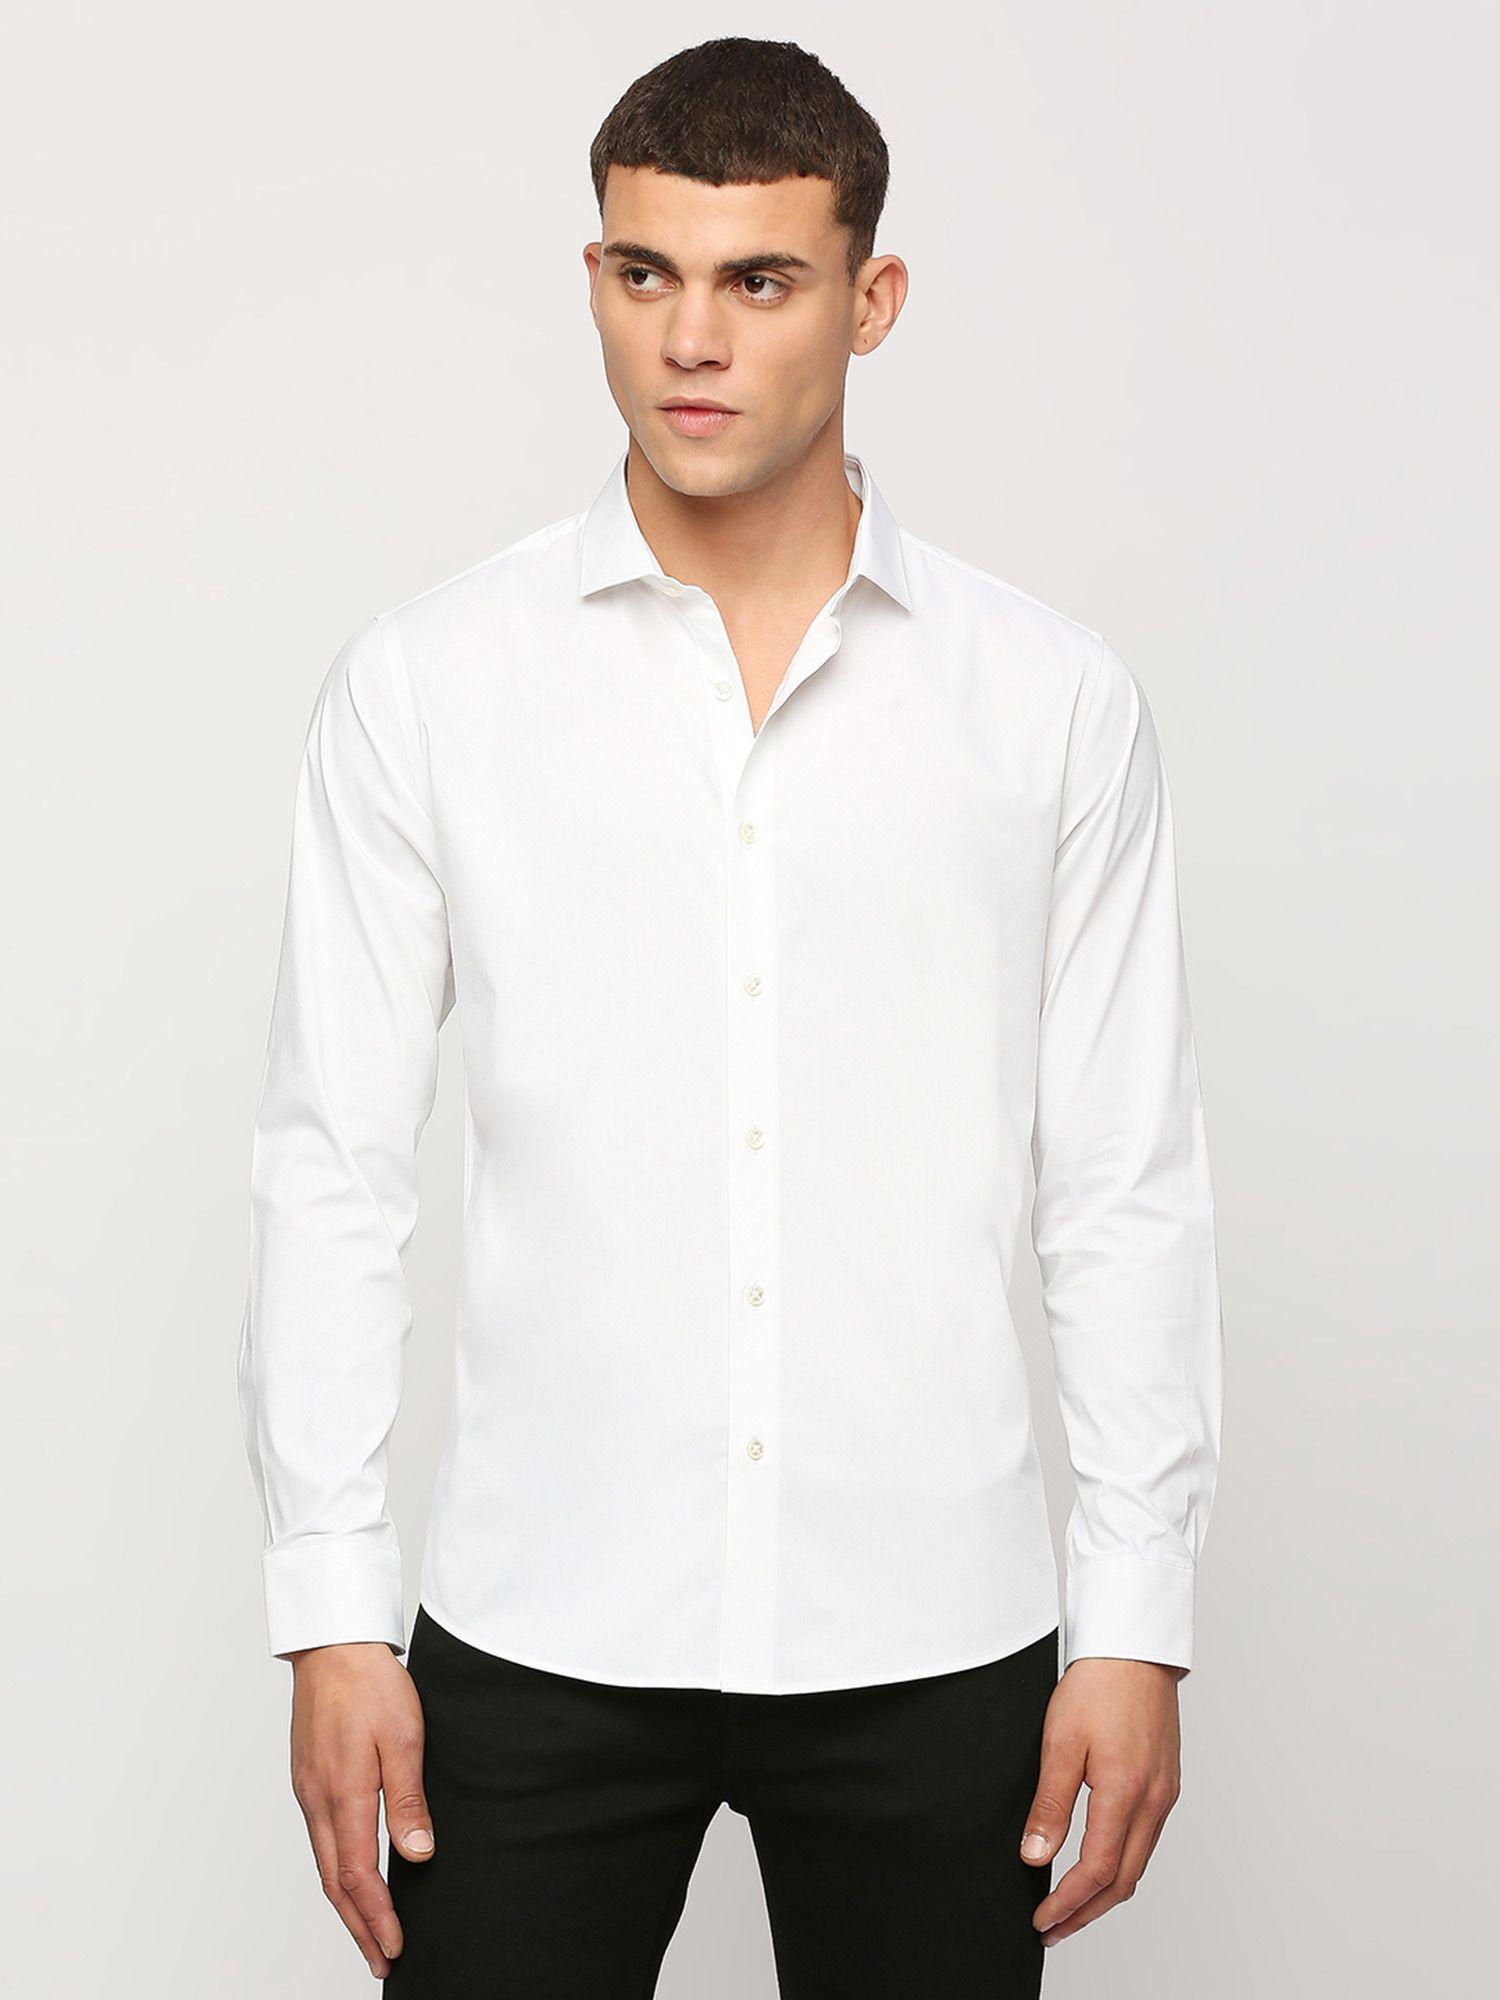 white full sleeves shirt